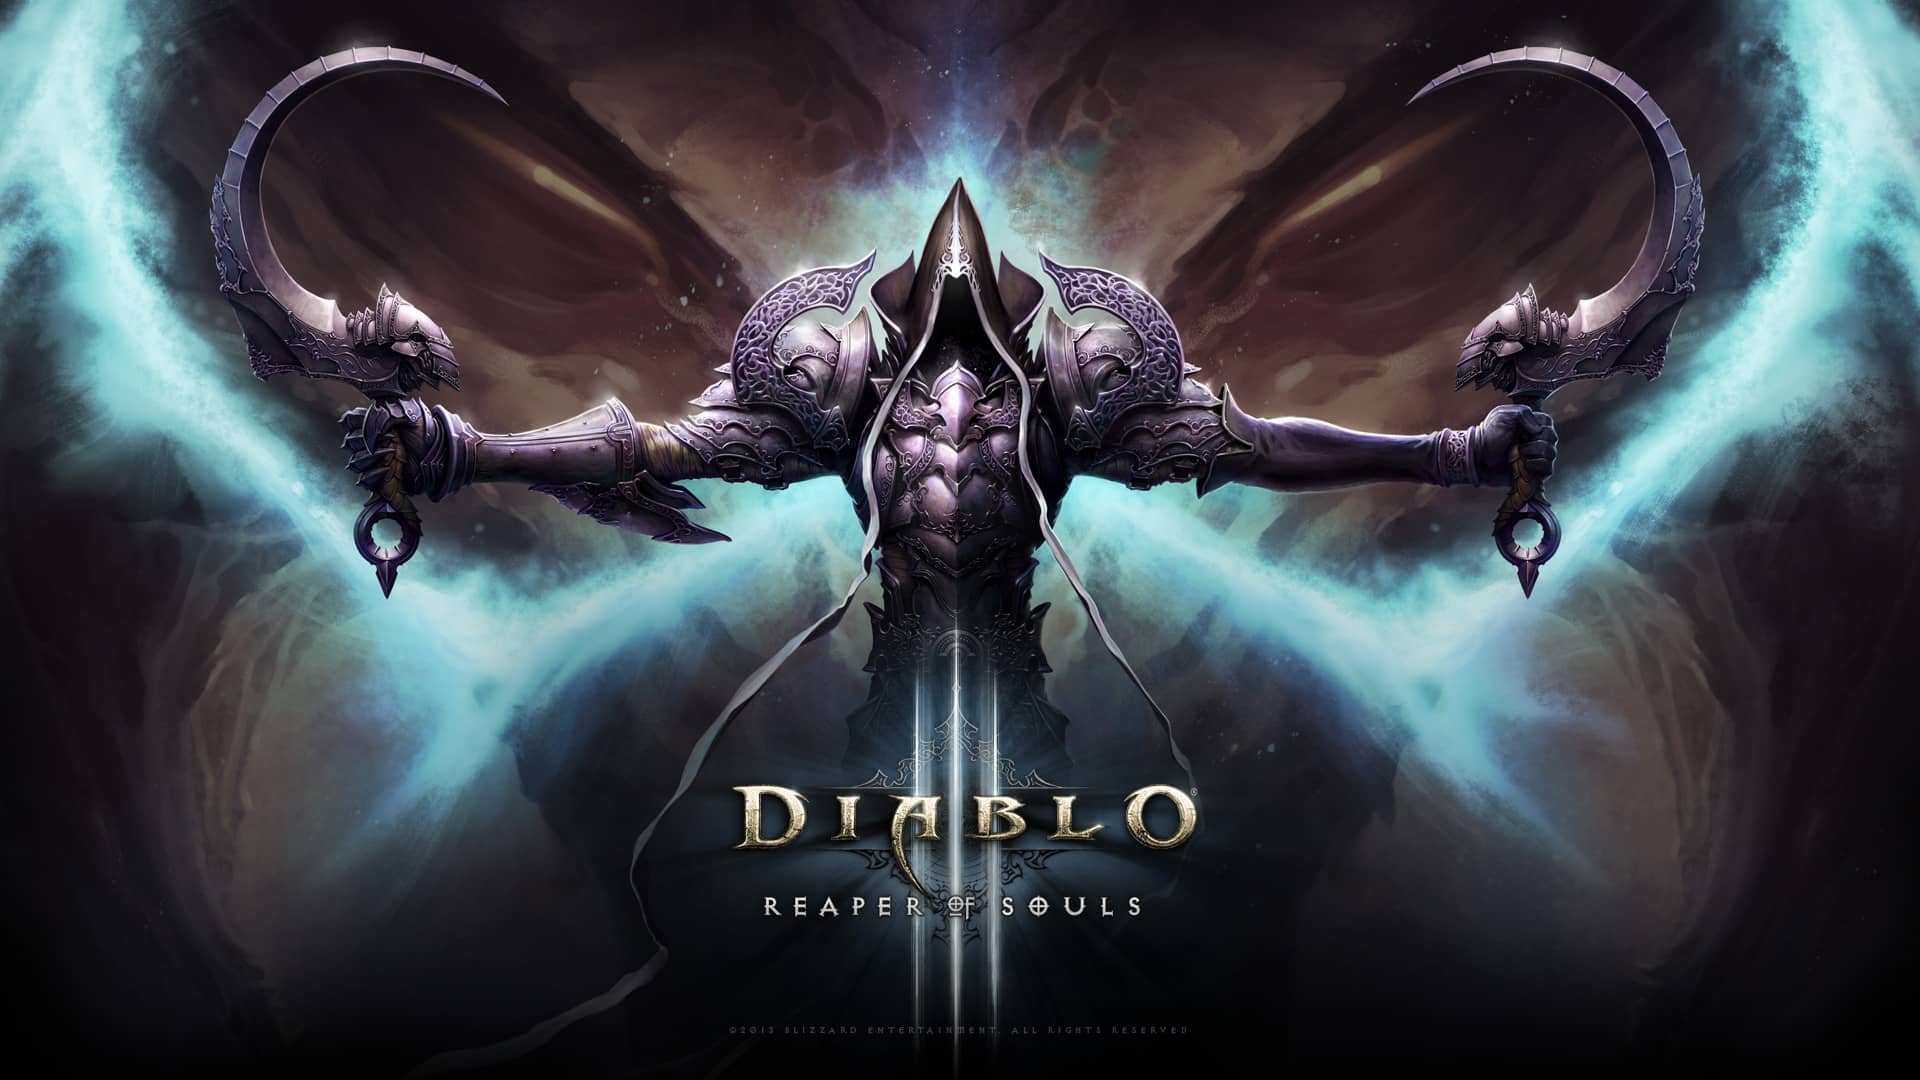 Imagen promocional de la caratula del juego Diablo 3